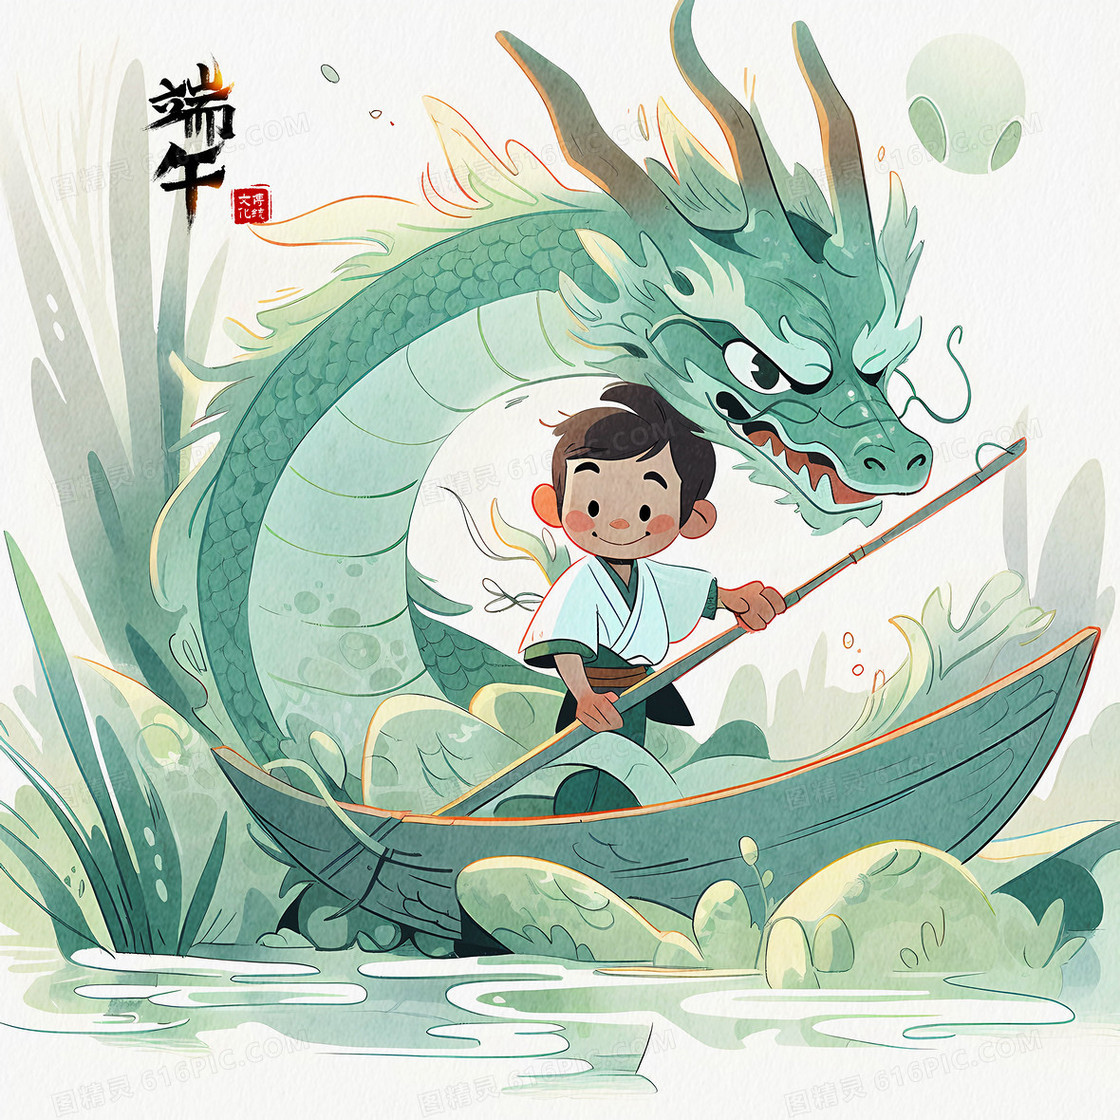 端午节可爱少年和一条巨开心的划船游湖创意插画